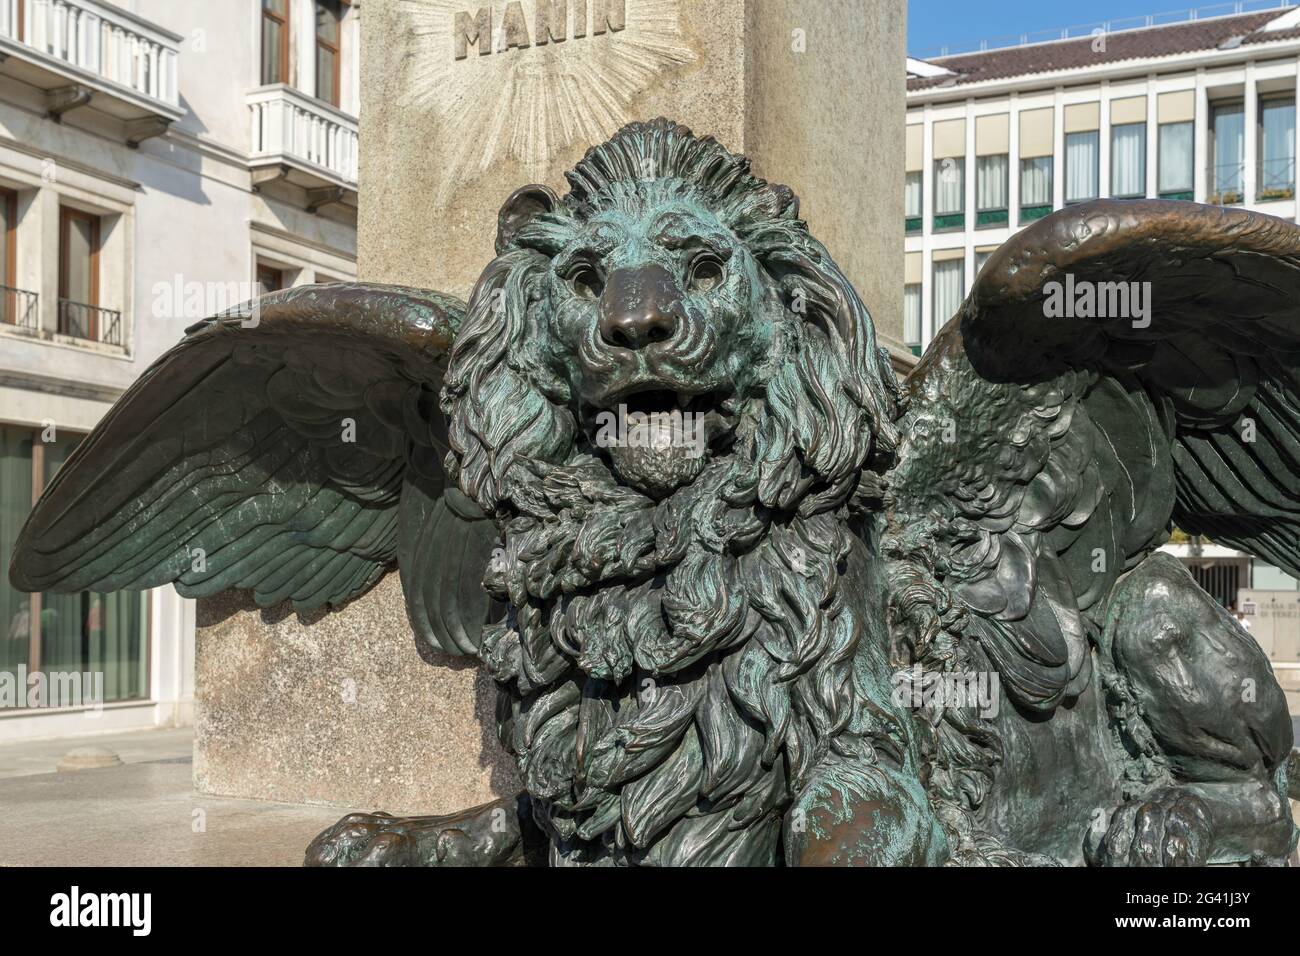 Leone alato sotto la statua di Daniele Manin a Venezia Foto Stock